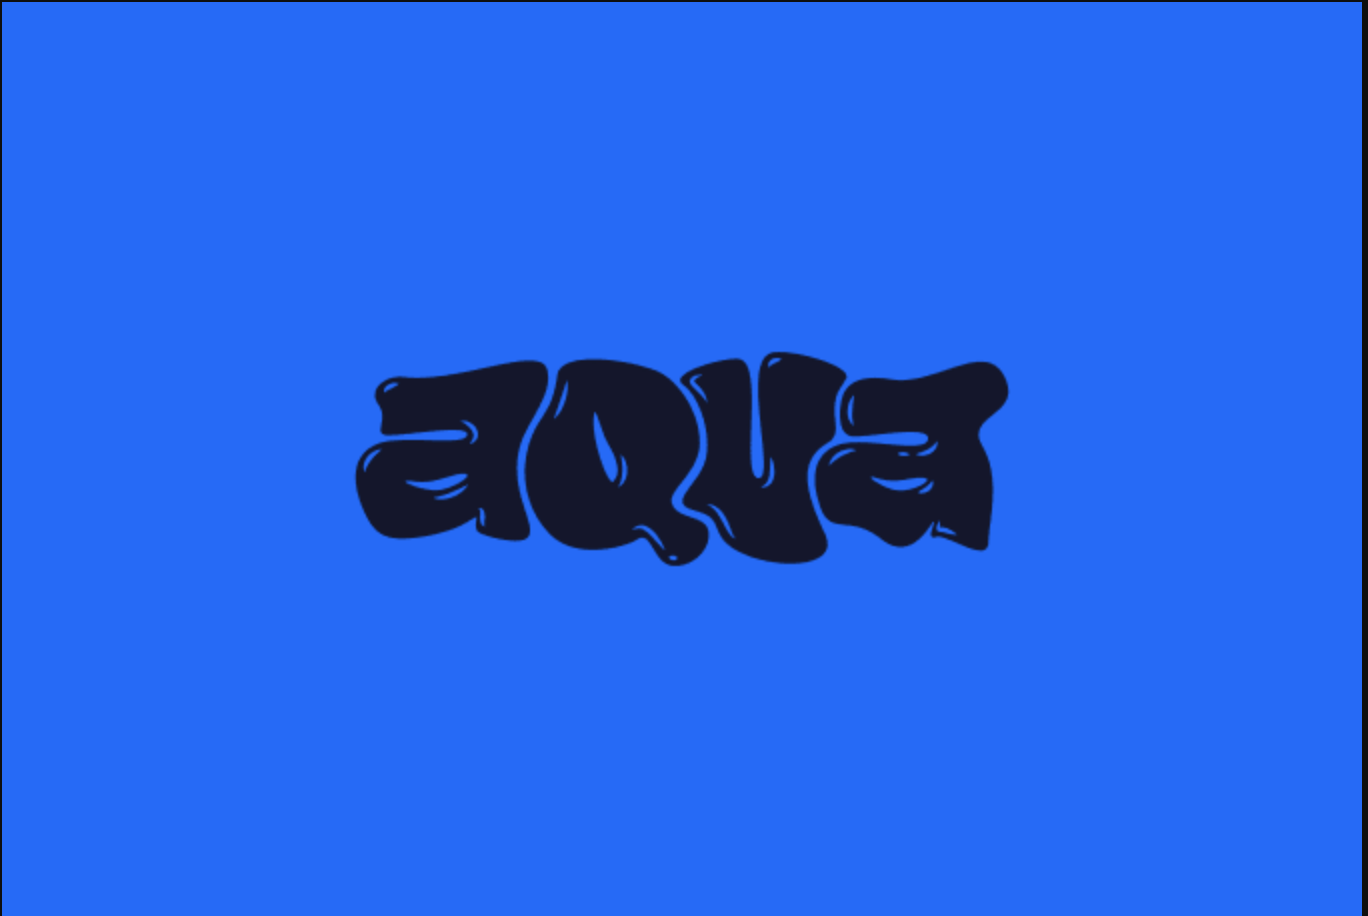 Sample text logo by Fiverr designer - Aqua